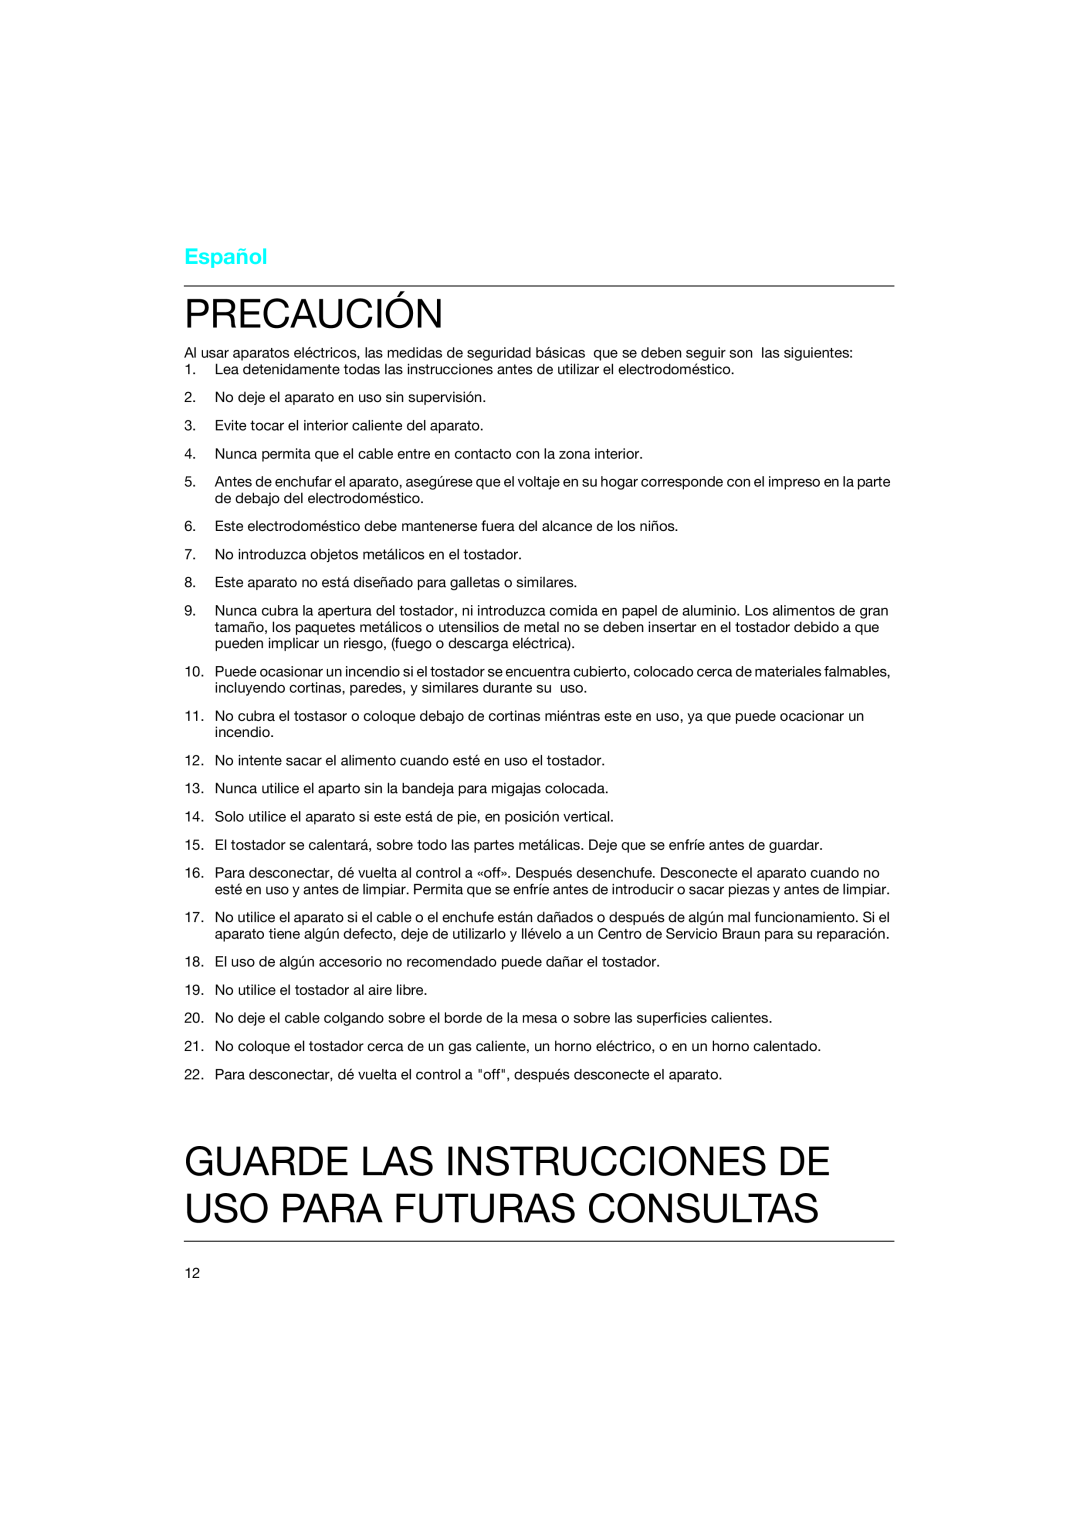 Braun 4118 manual Precaución, Guarde Las Instrucciones De Uso Para Futuras Consultas, Español 